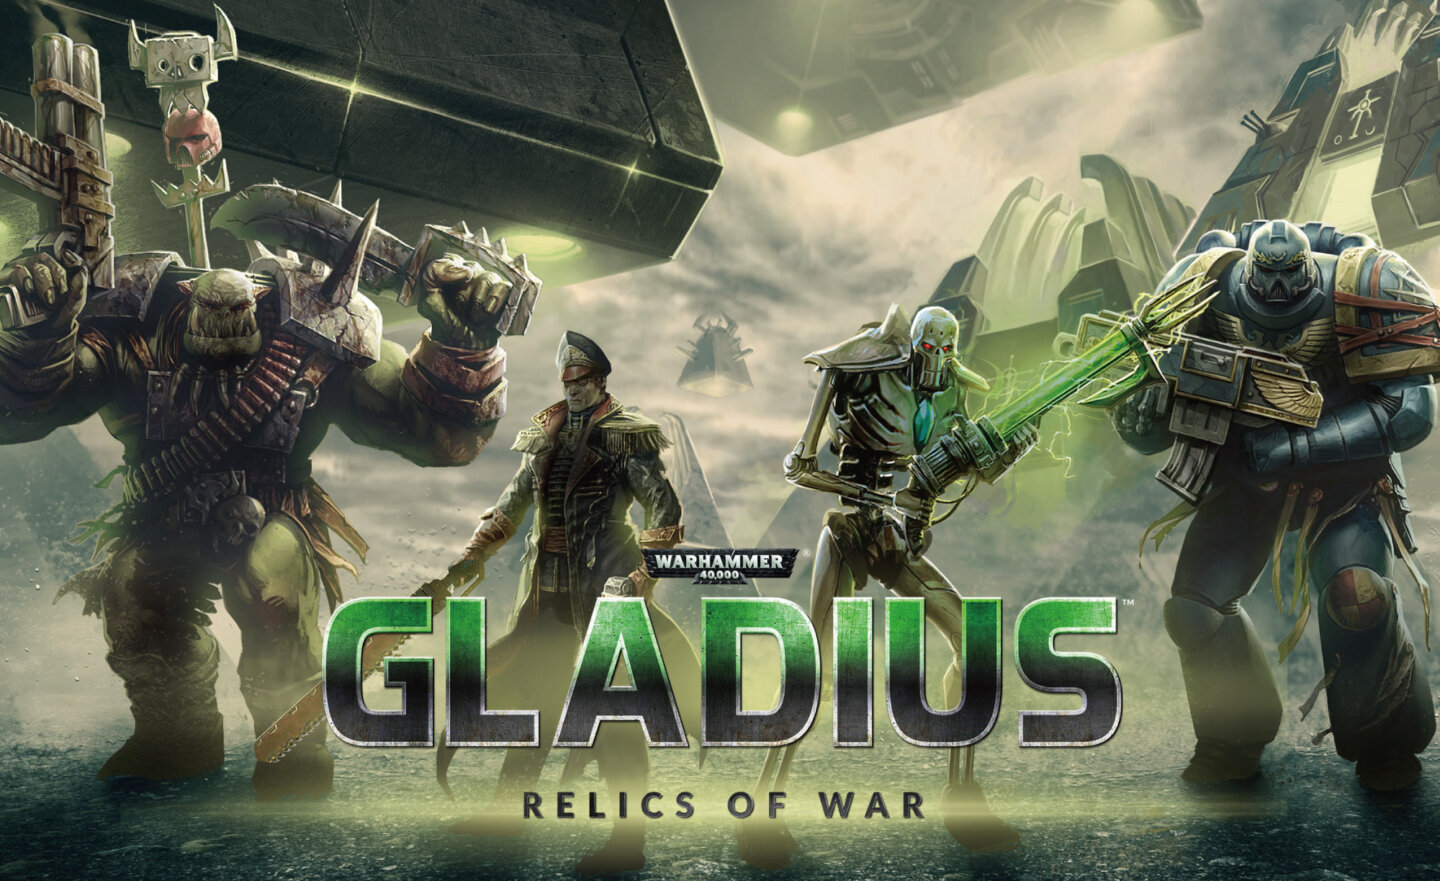 【限時免費】登入 Steam 領取《Warhammer 40,000: Gladius – Relics of War》，6 月 2 日凌晨 1:00 前永久保留